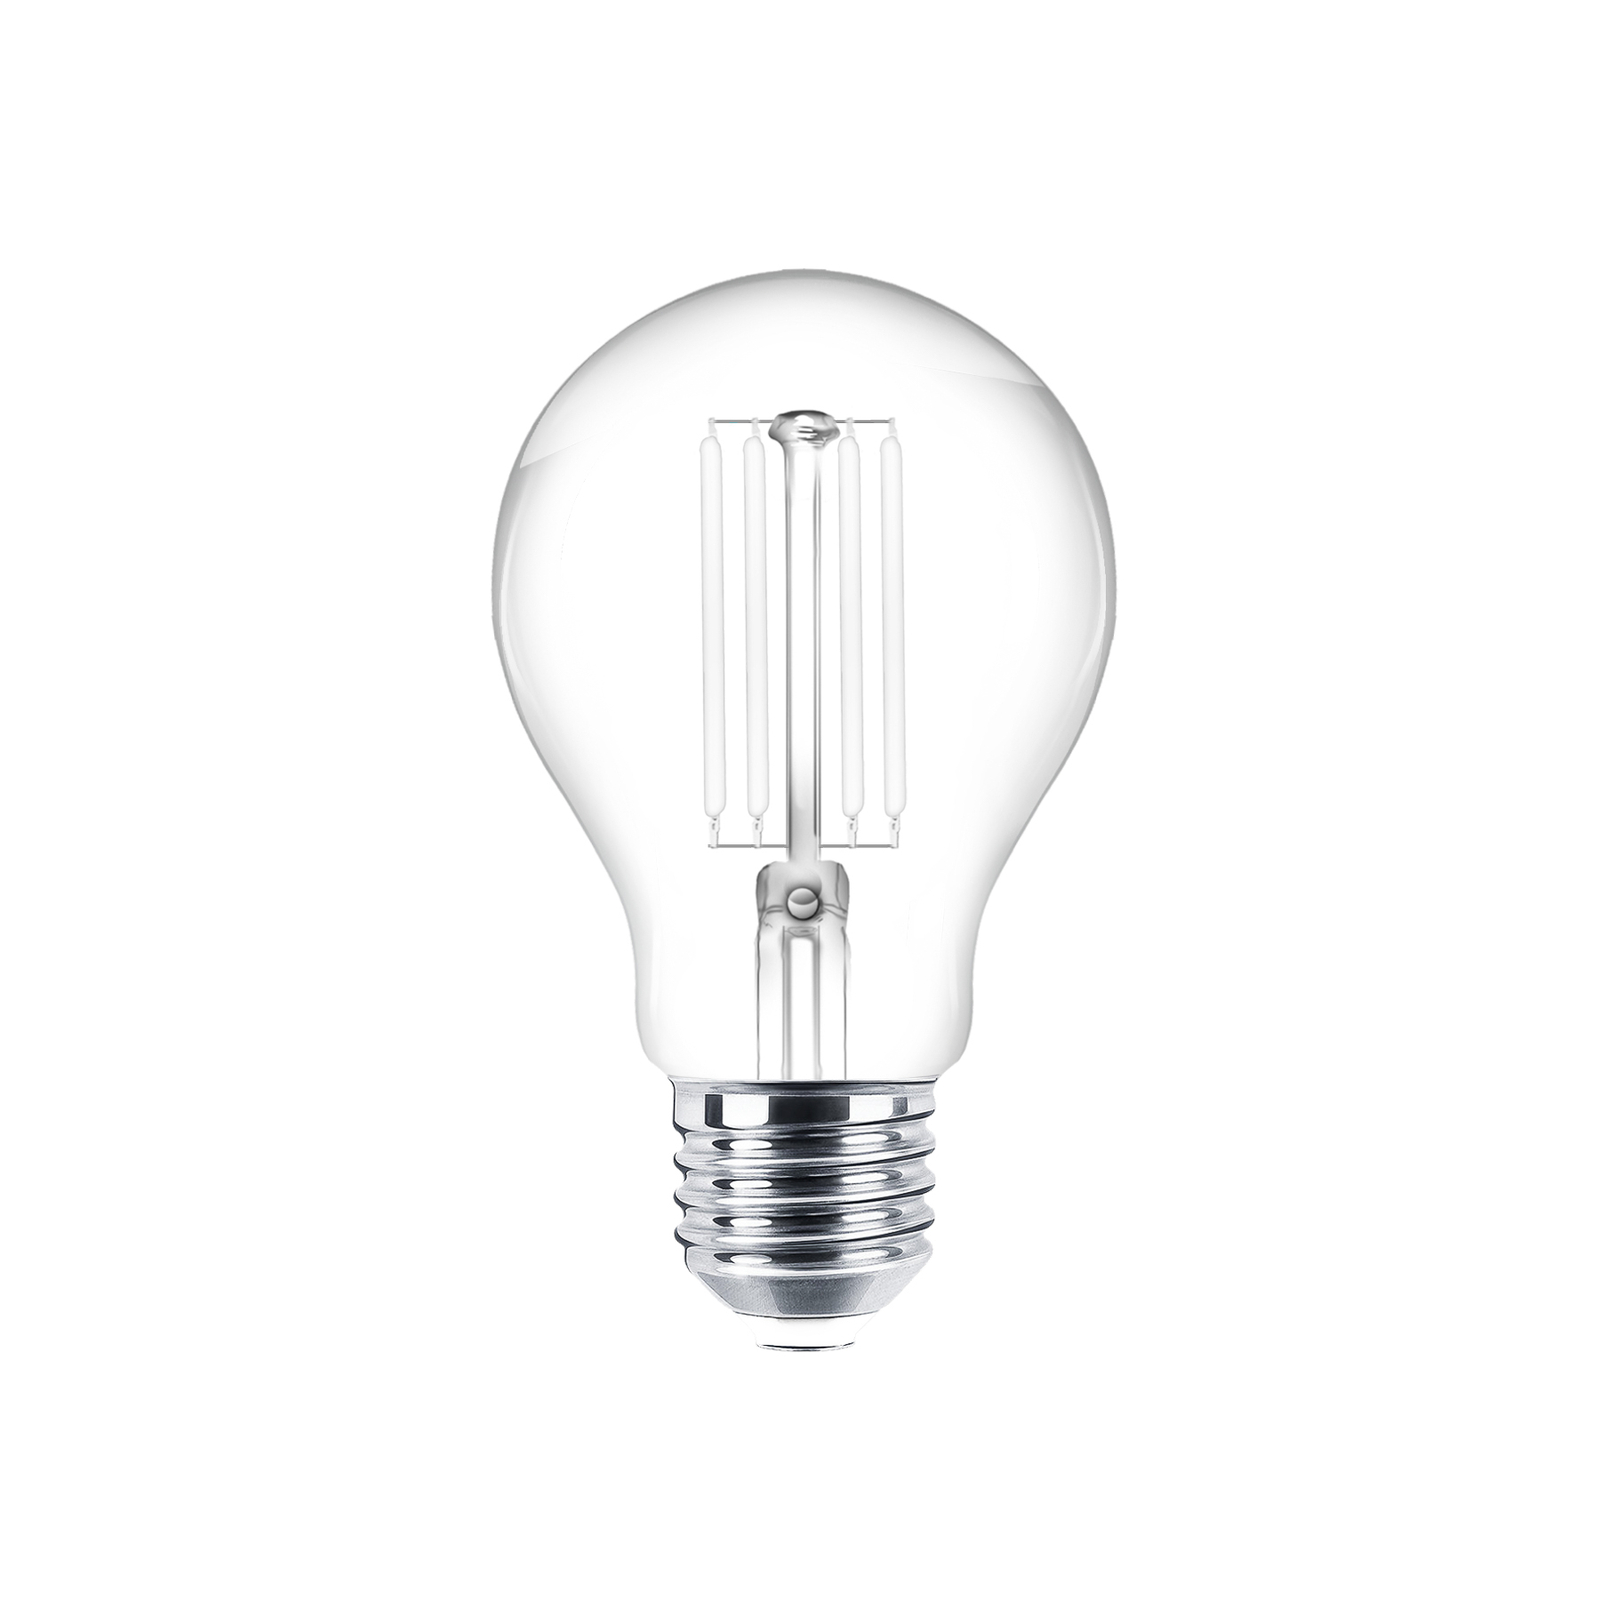 LED bulb Filament E27 set of 5 7W 806 lm clear 2,700K